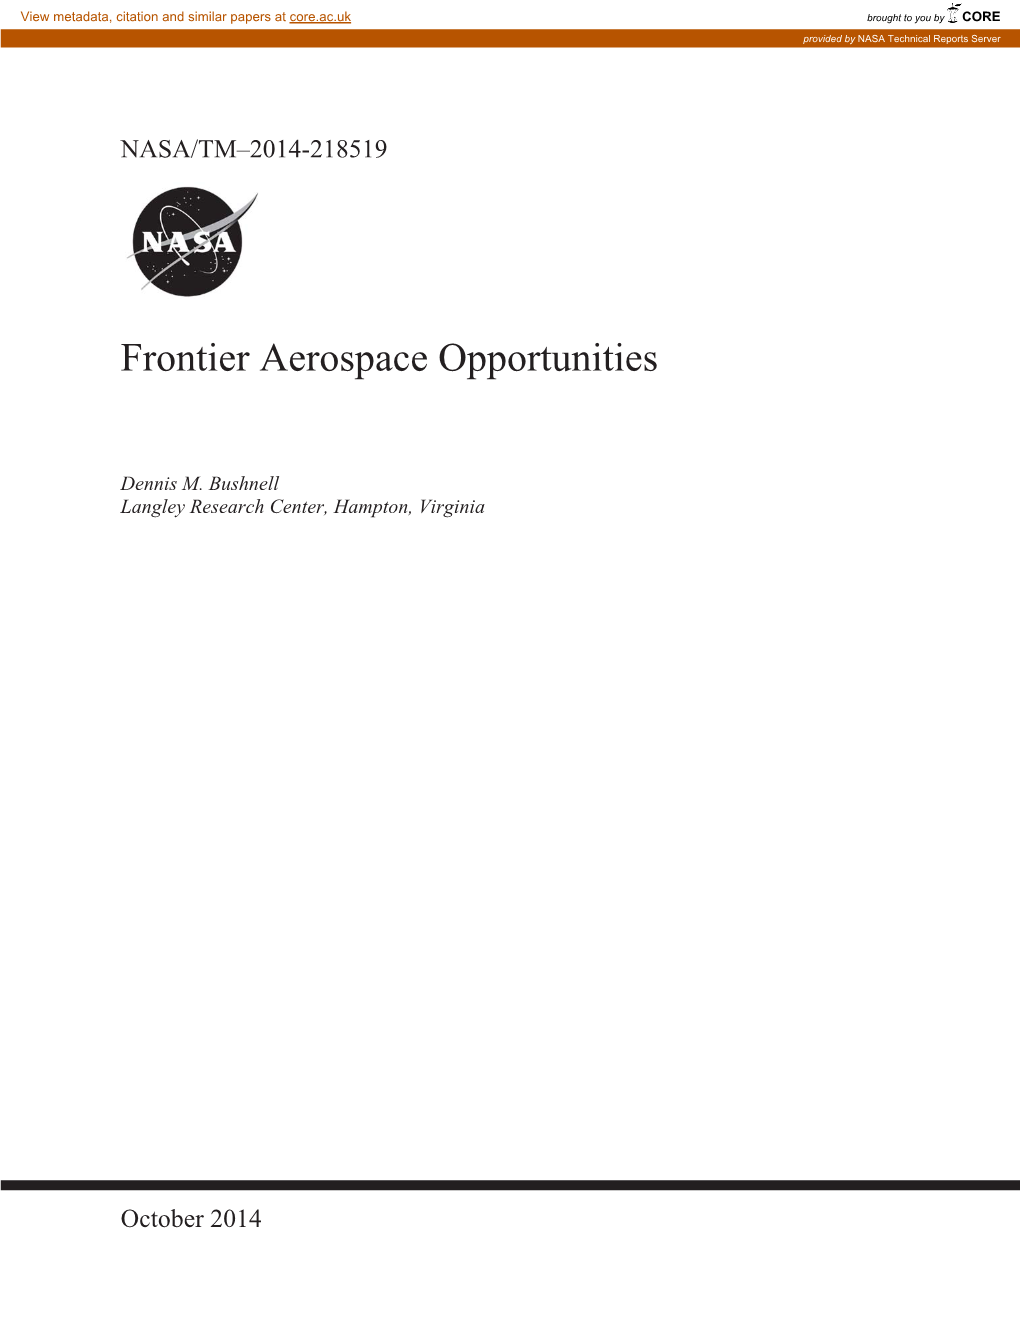 Frontier Aerospace Opportunities